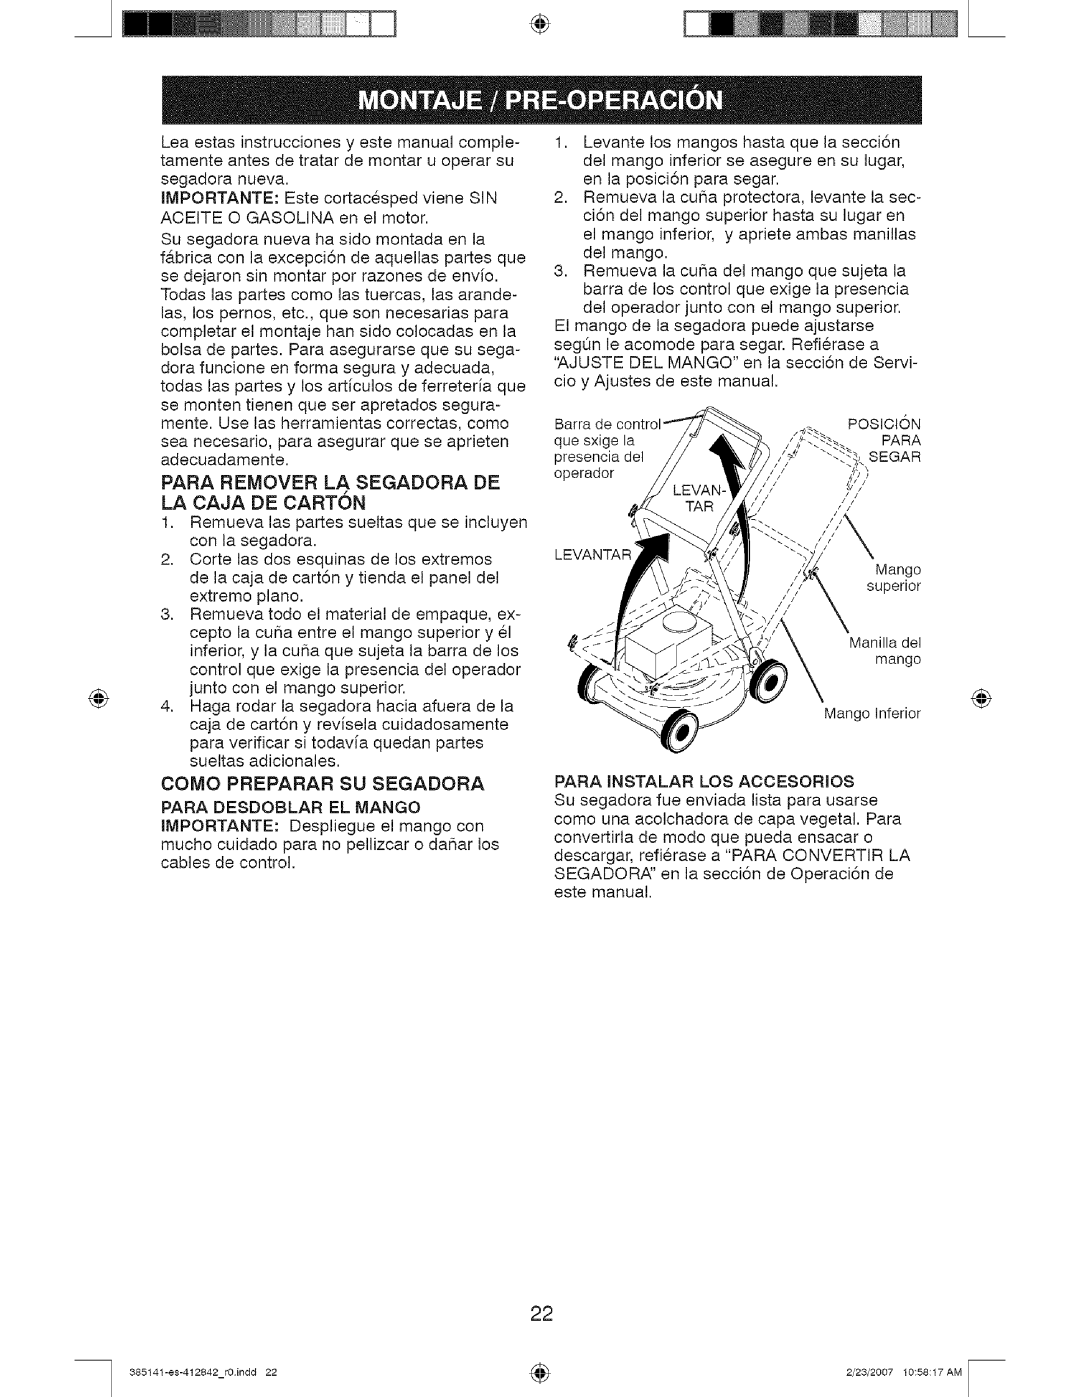 Craftsman 385, 141 owner manual Para Remover La Segadora De La Caja De Carton 